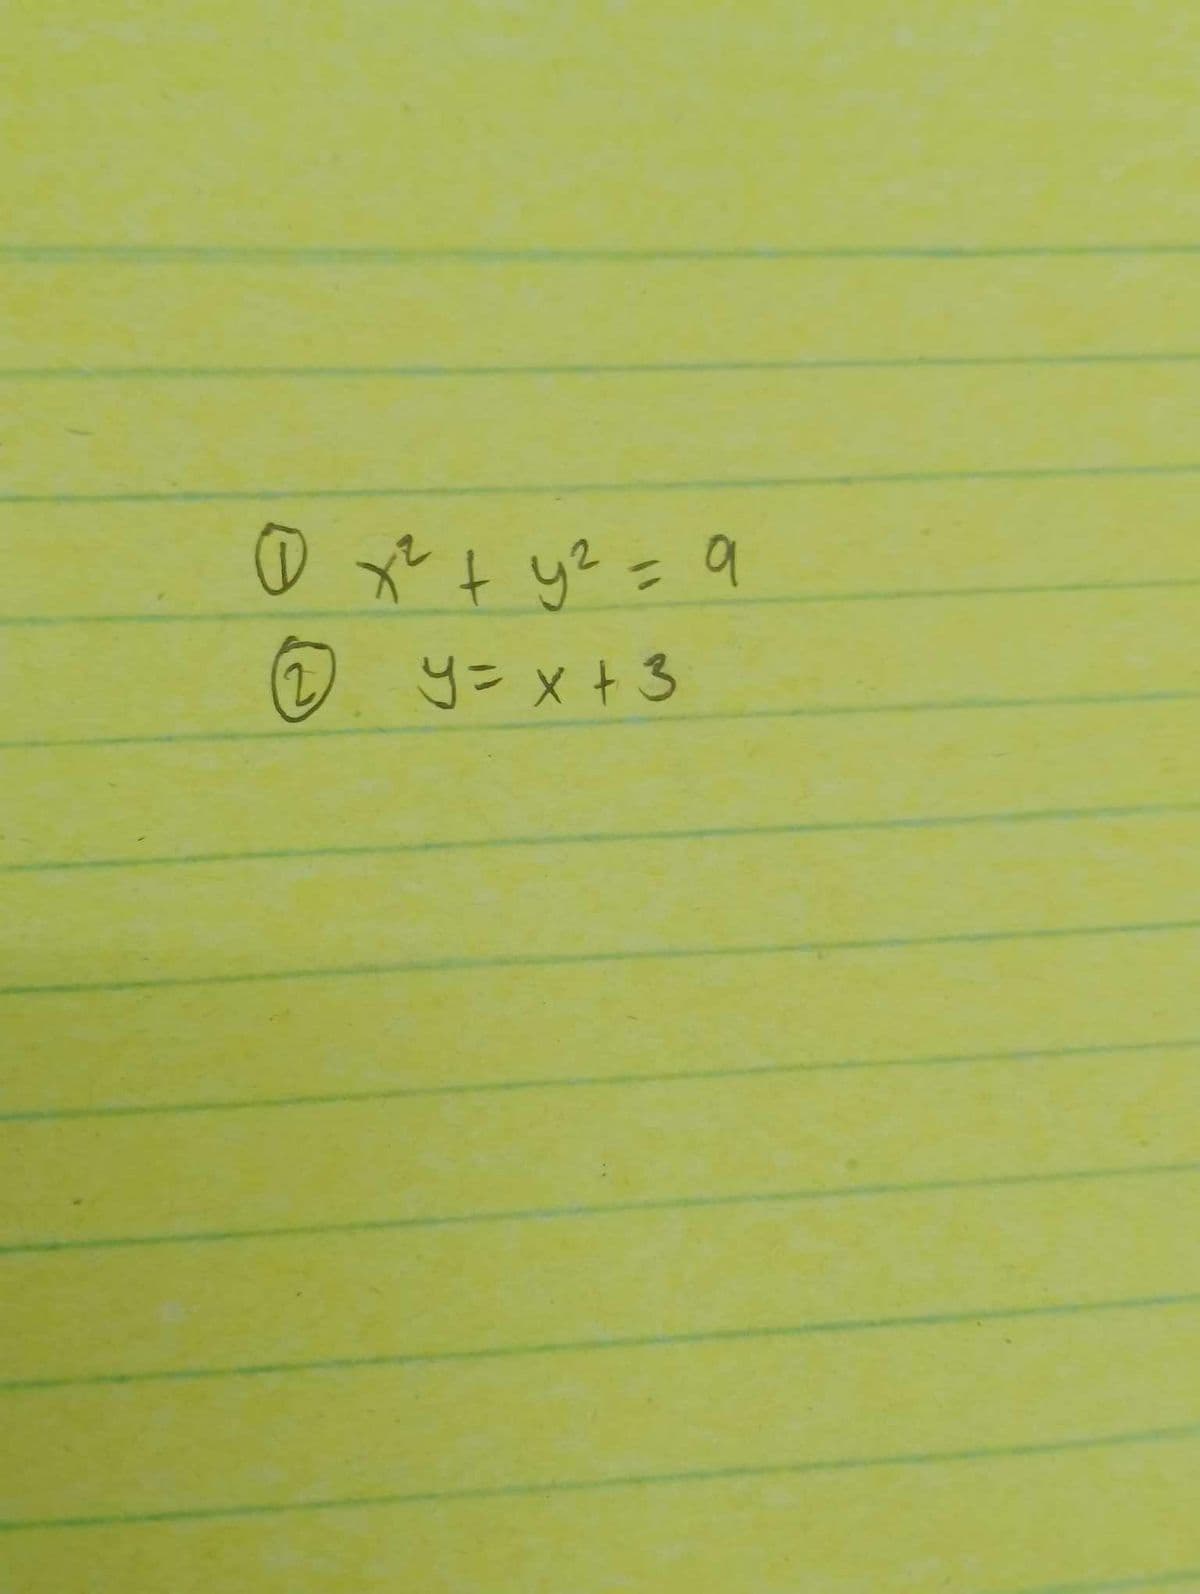 0 x ² + y² = 9
(2
y = x + 3